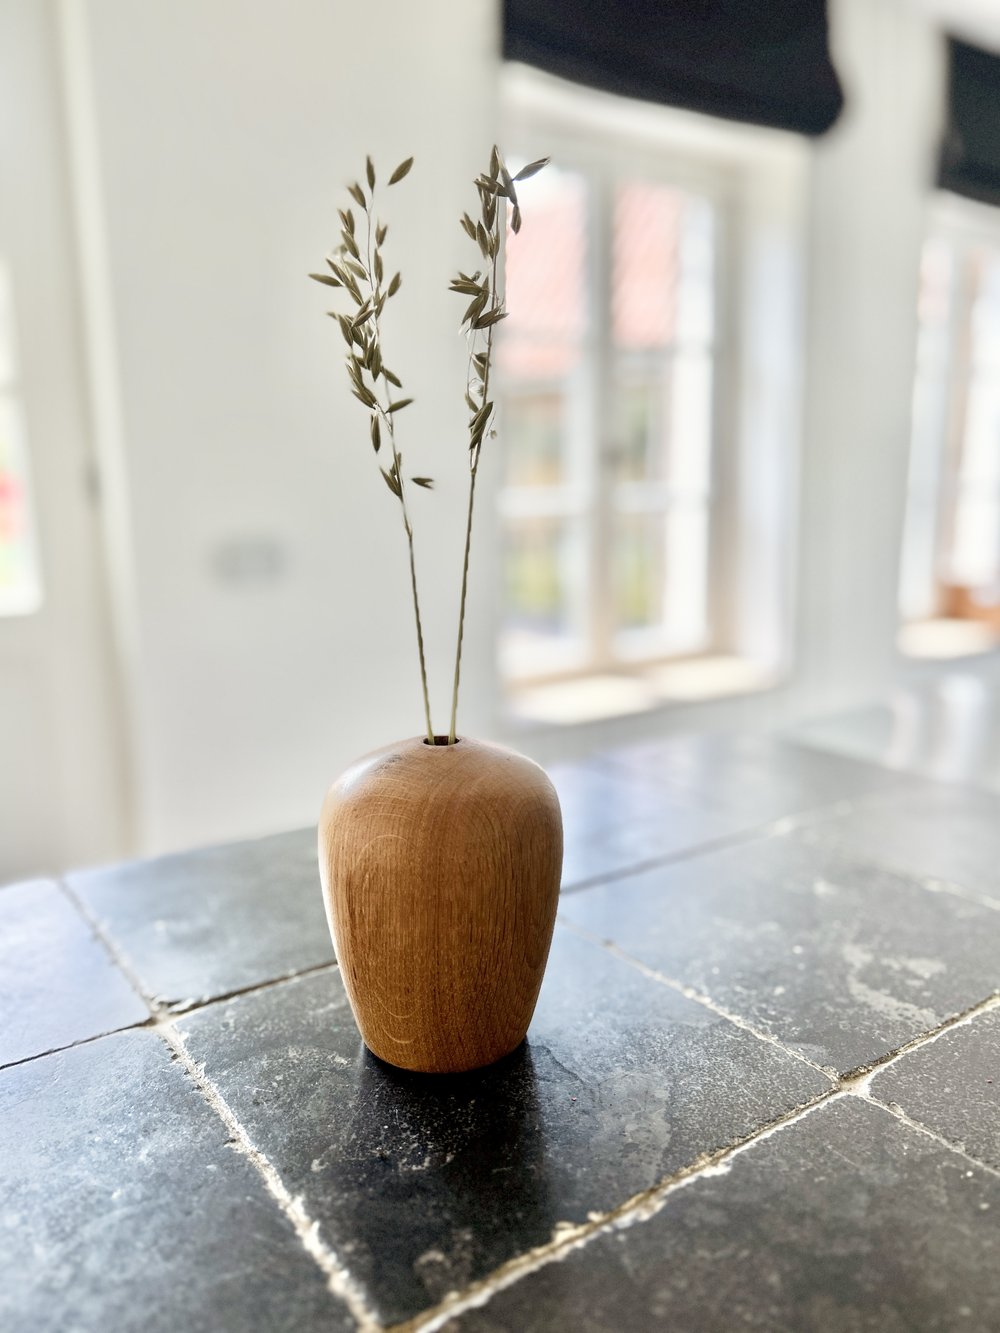 Vase en bois — Houbline - Fleurs séchées et Houblon des Flandres